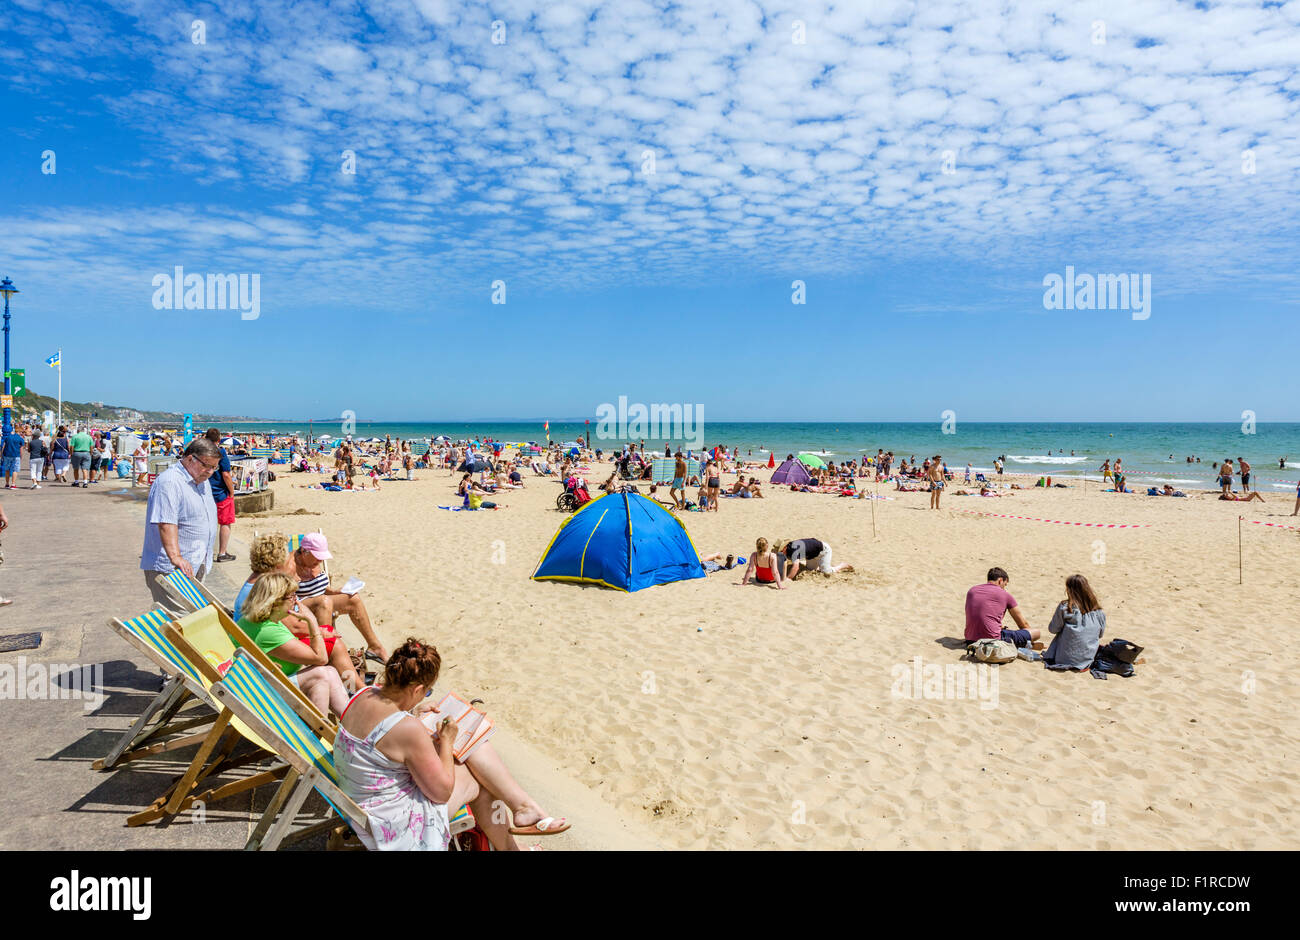 La plage de Bournemouth, Dorset, England, UK Banque D'Images